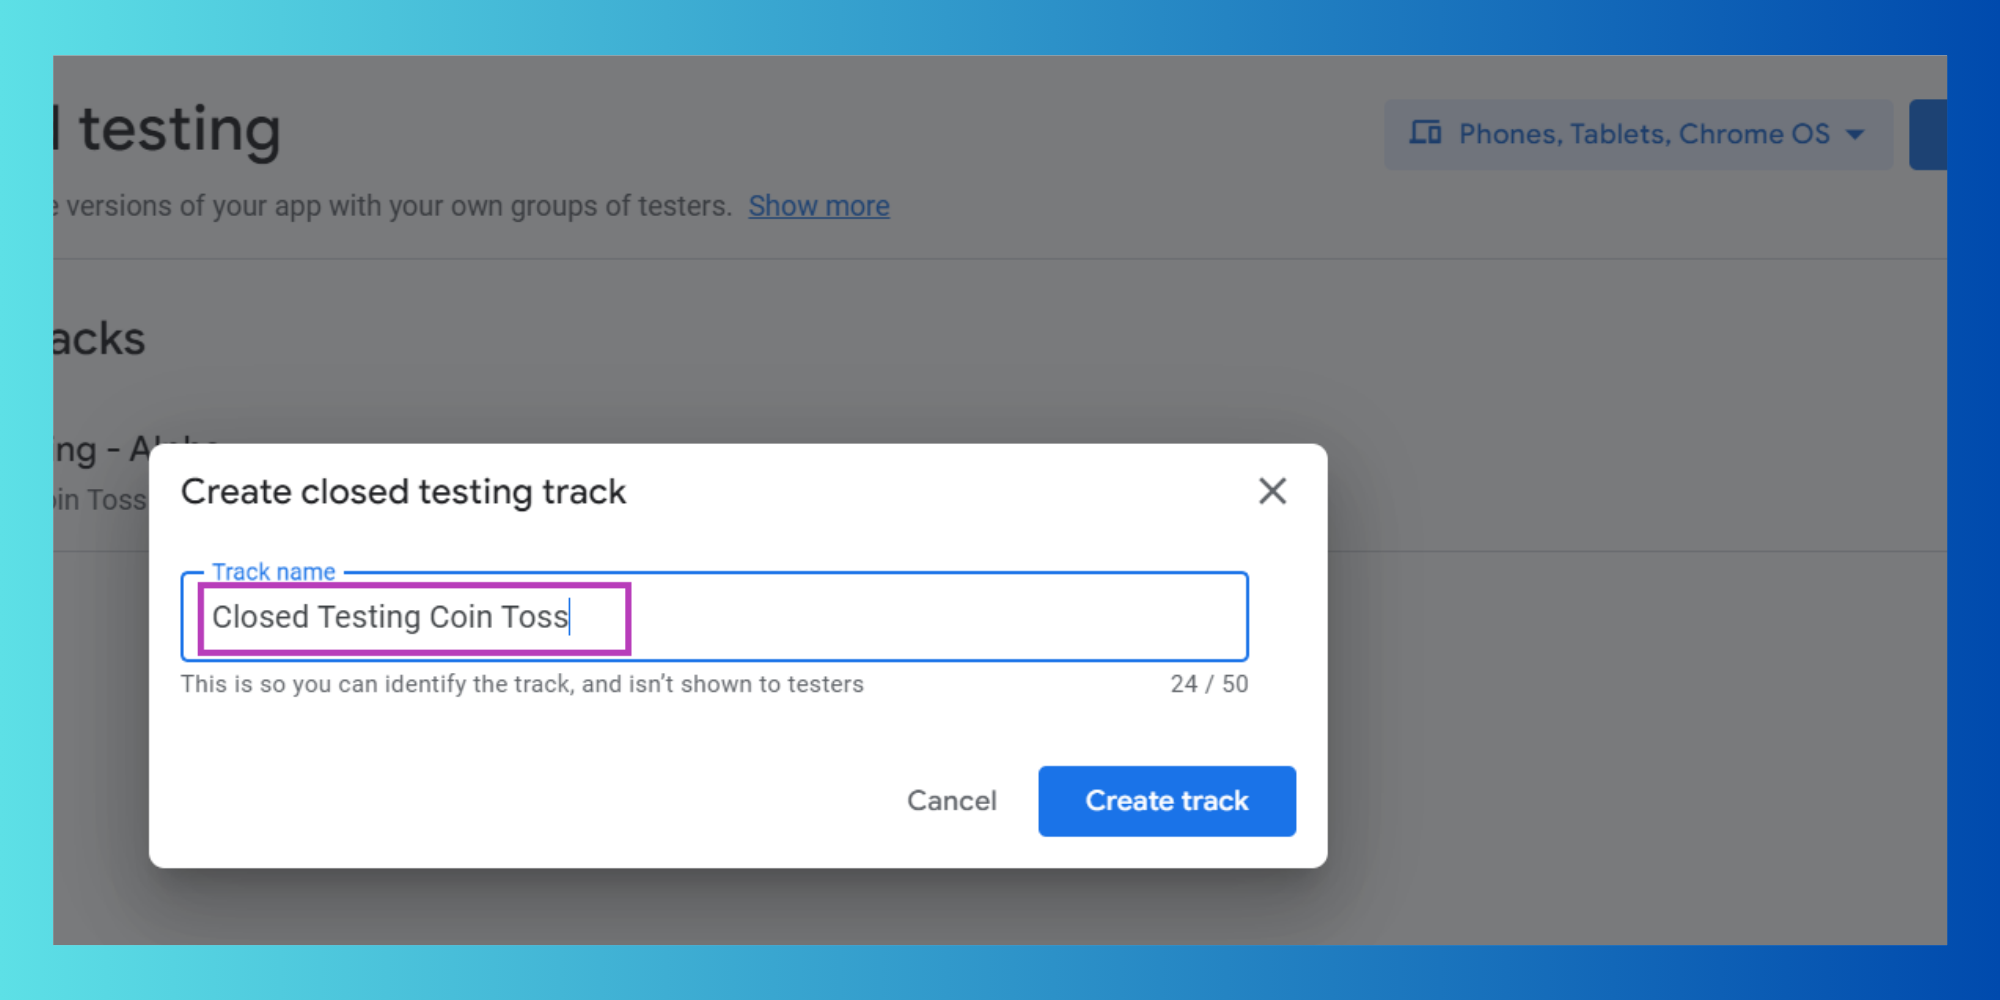 Create track button